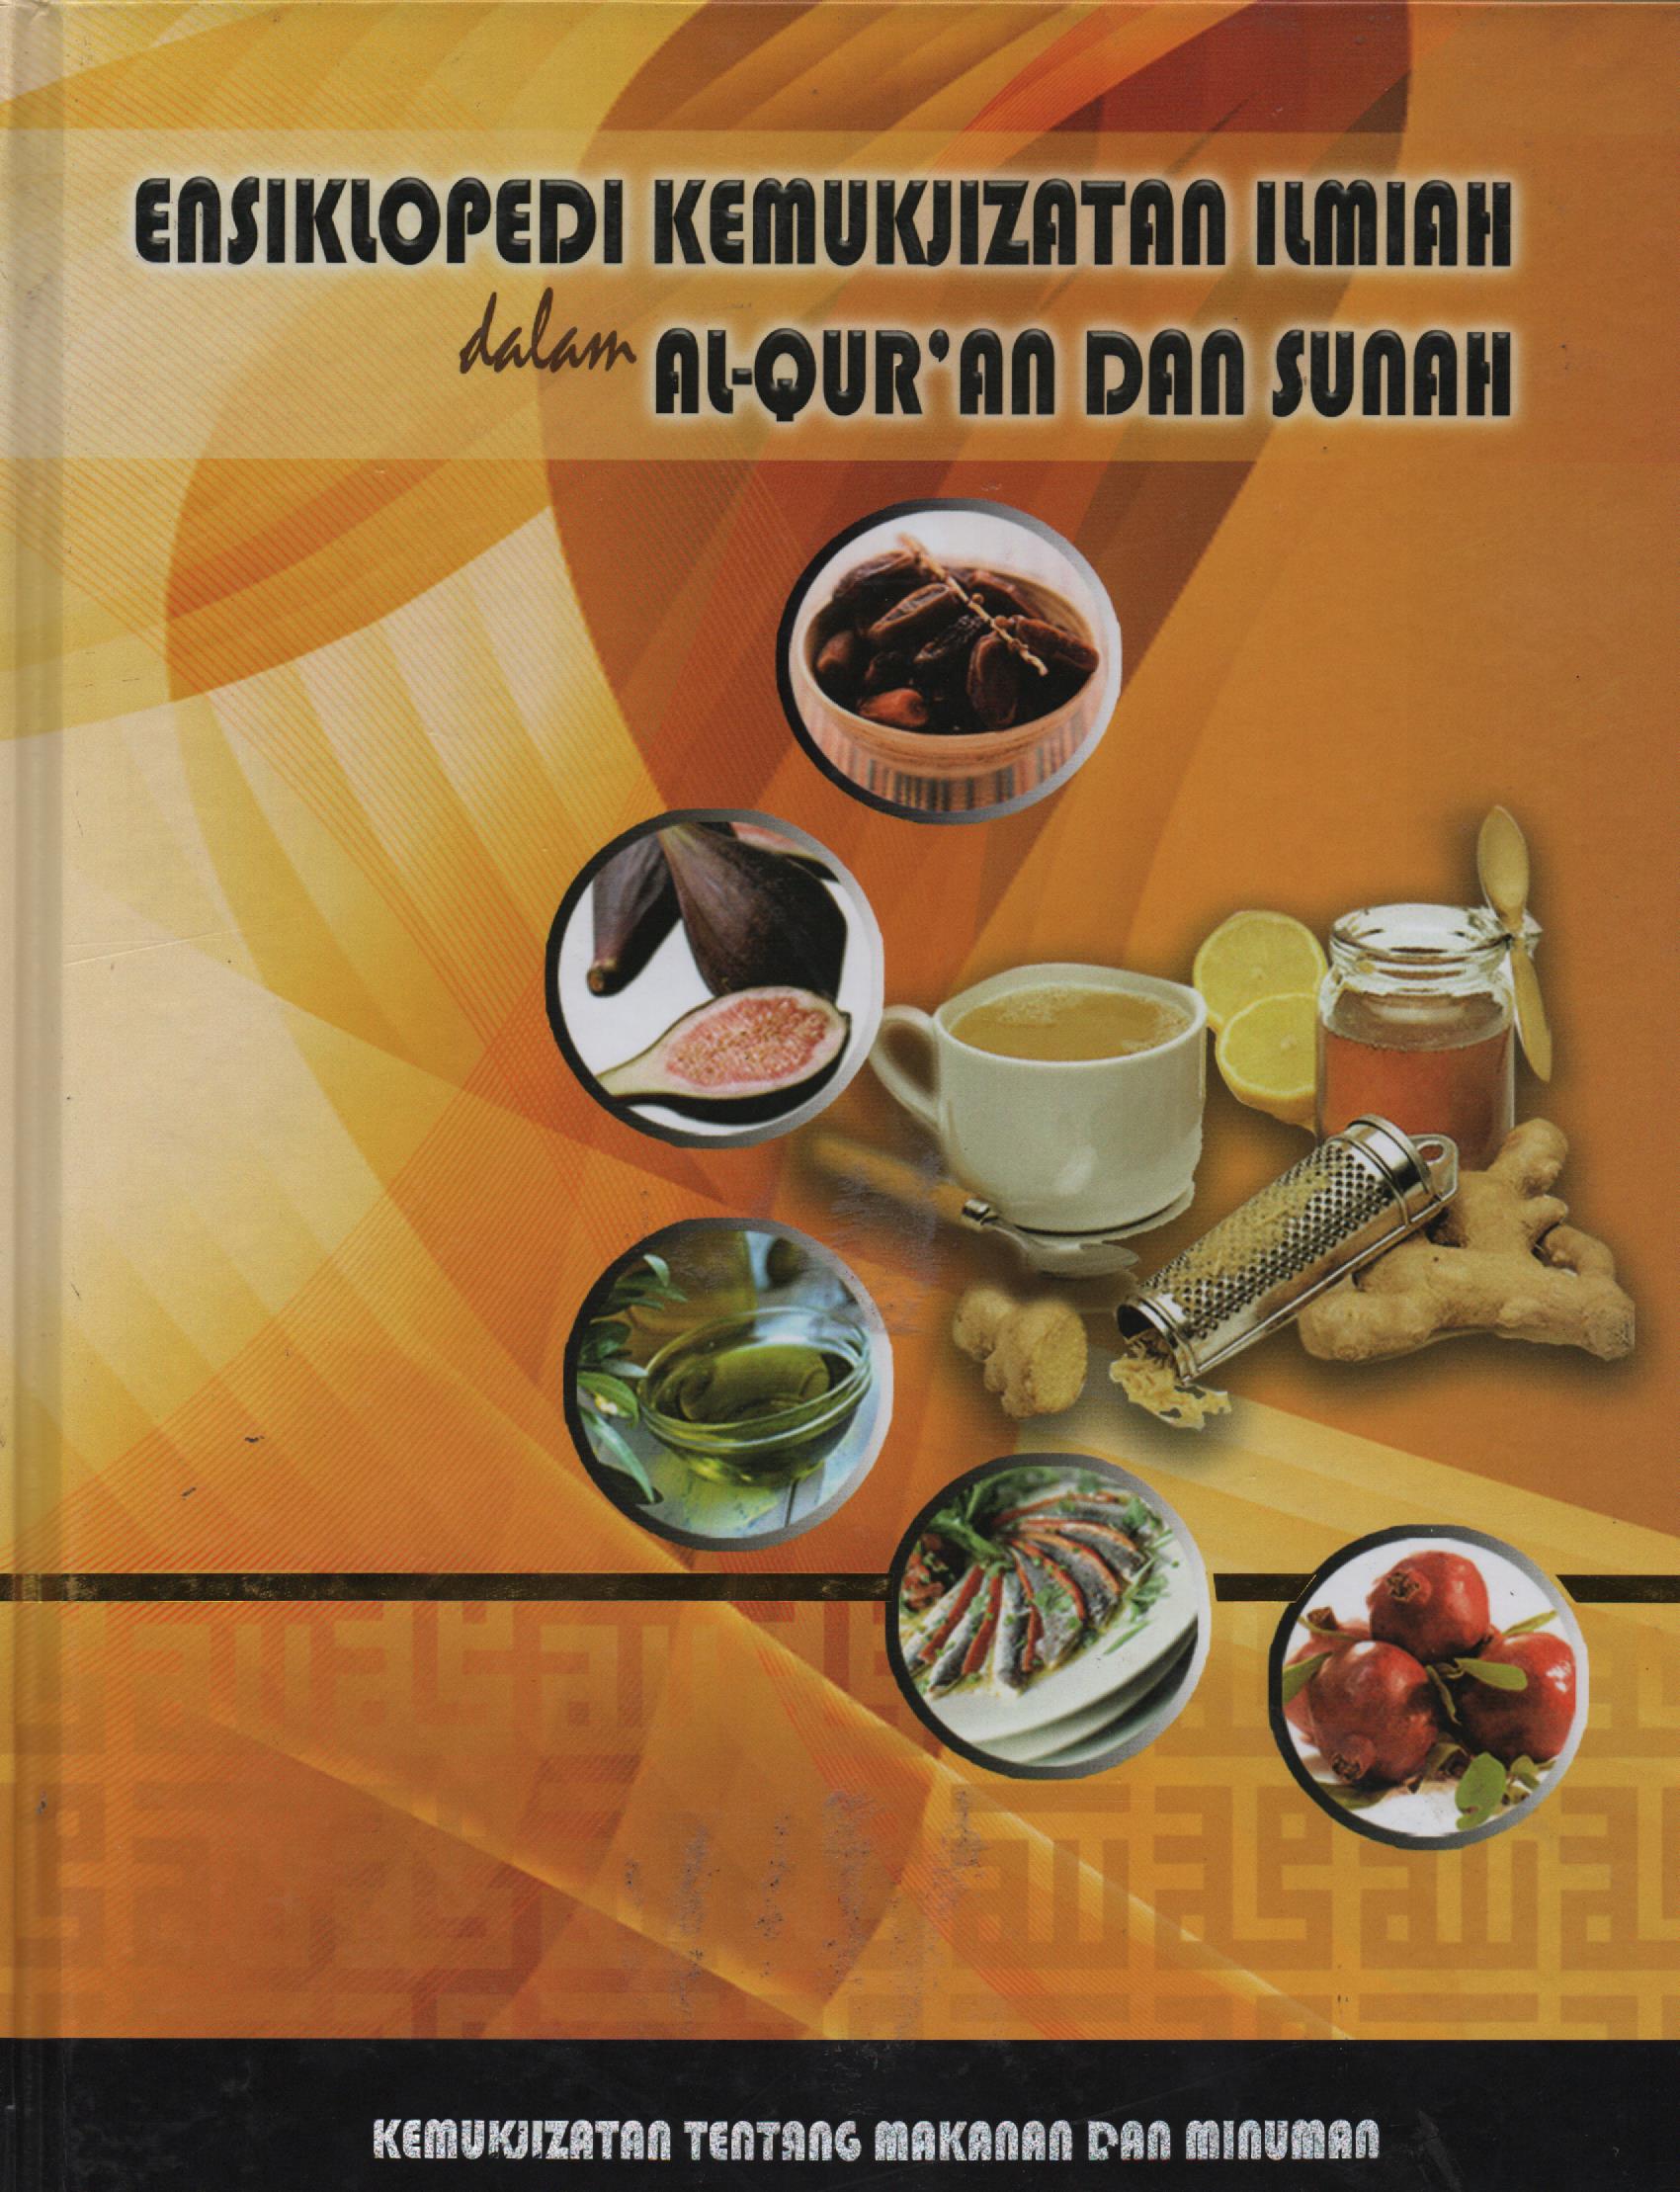 Ensiklopedi Kemukjizatan Ilmiah Dalam Al-Qur'an dan Sunah Jilid 5 :  Kemukjizatan Makanan dan Minuman